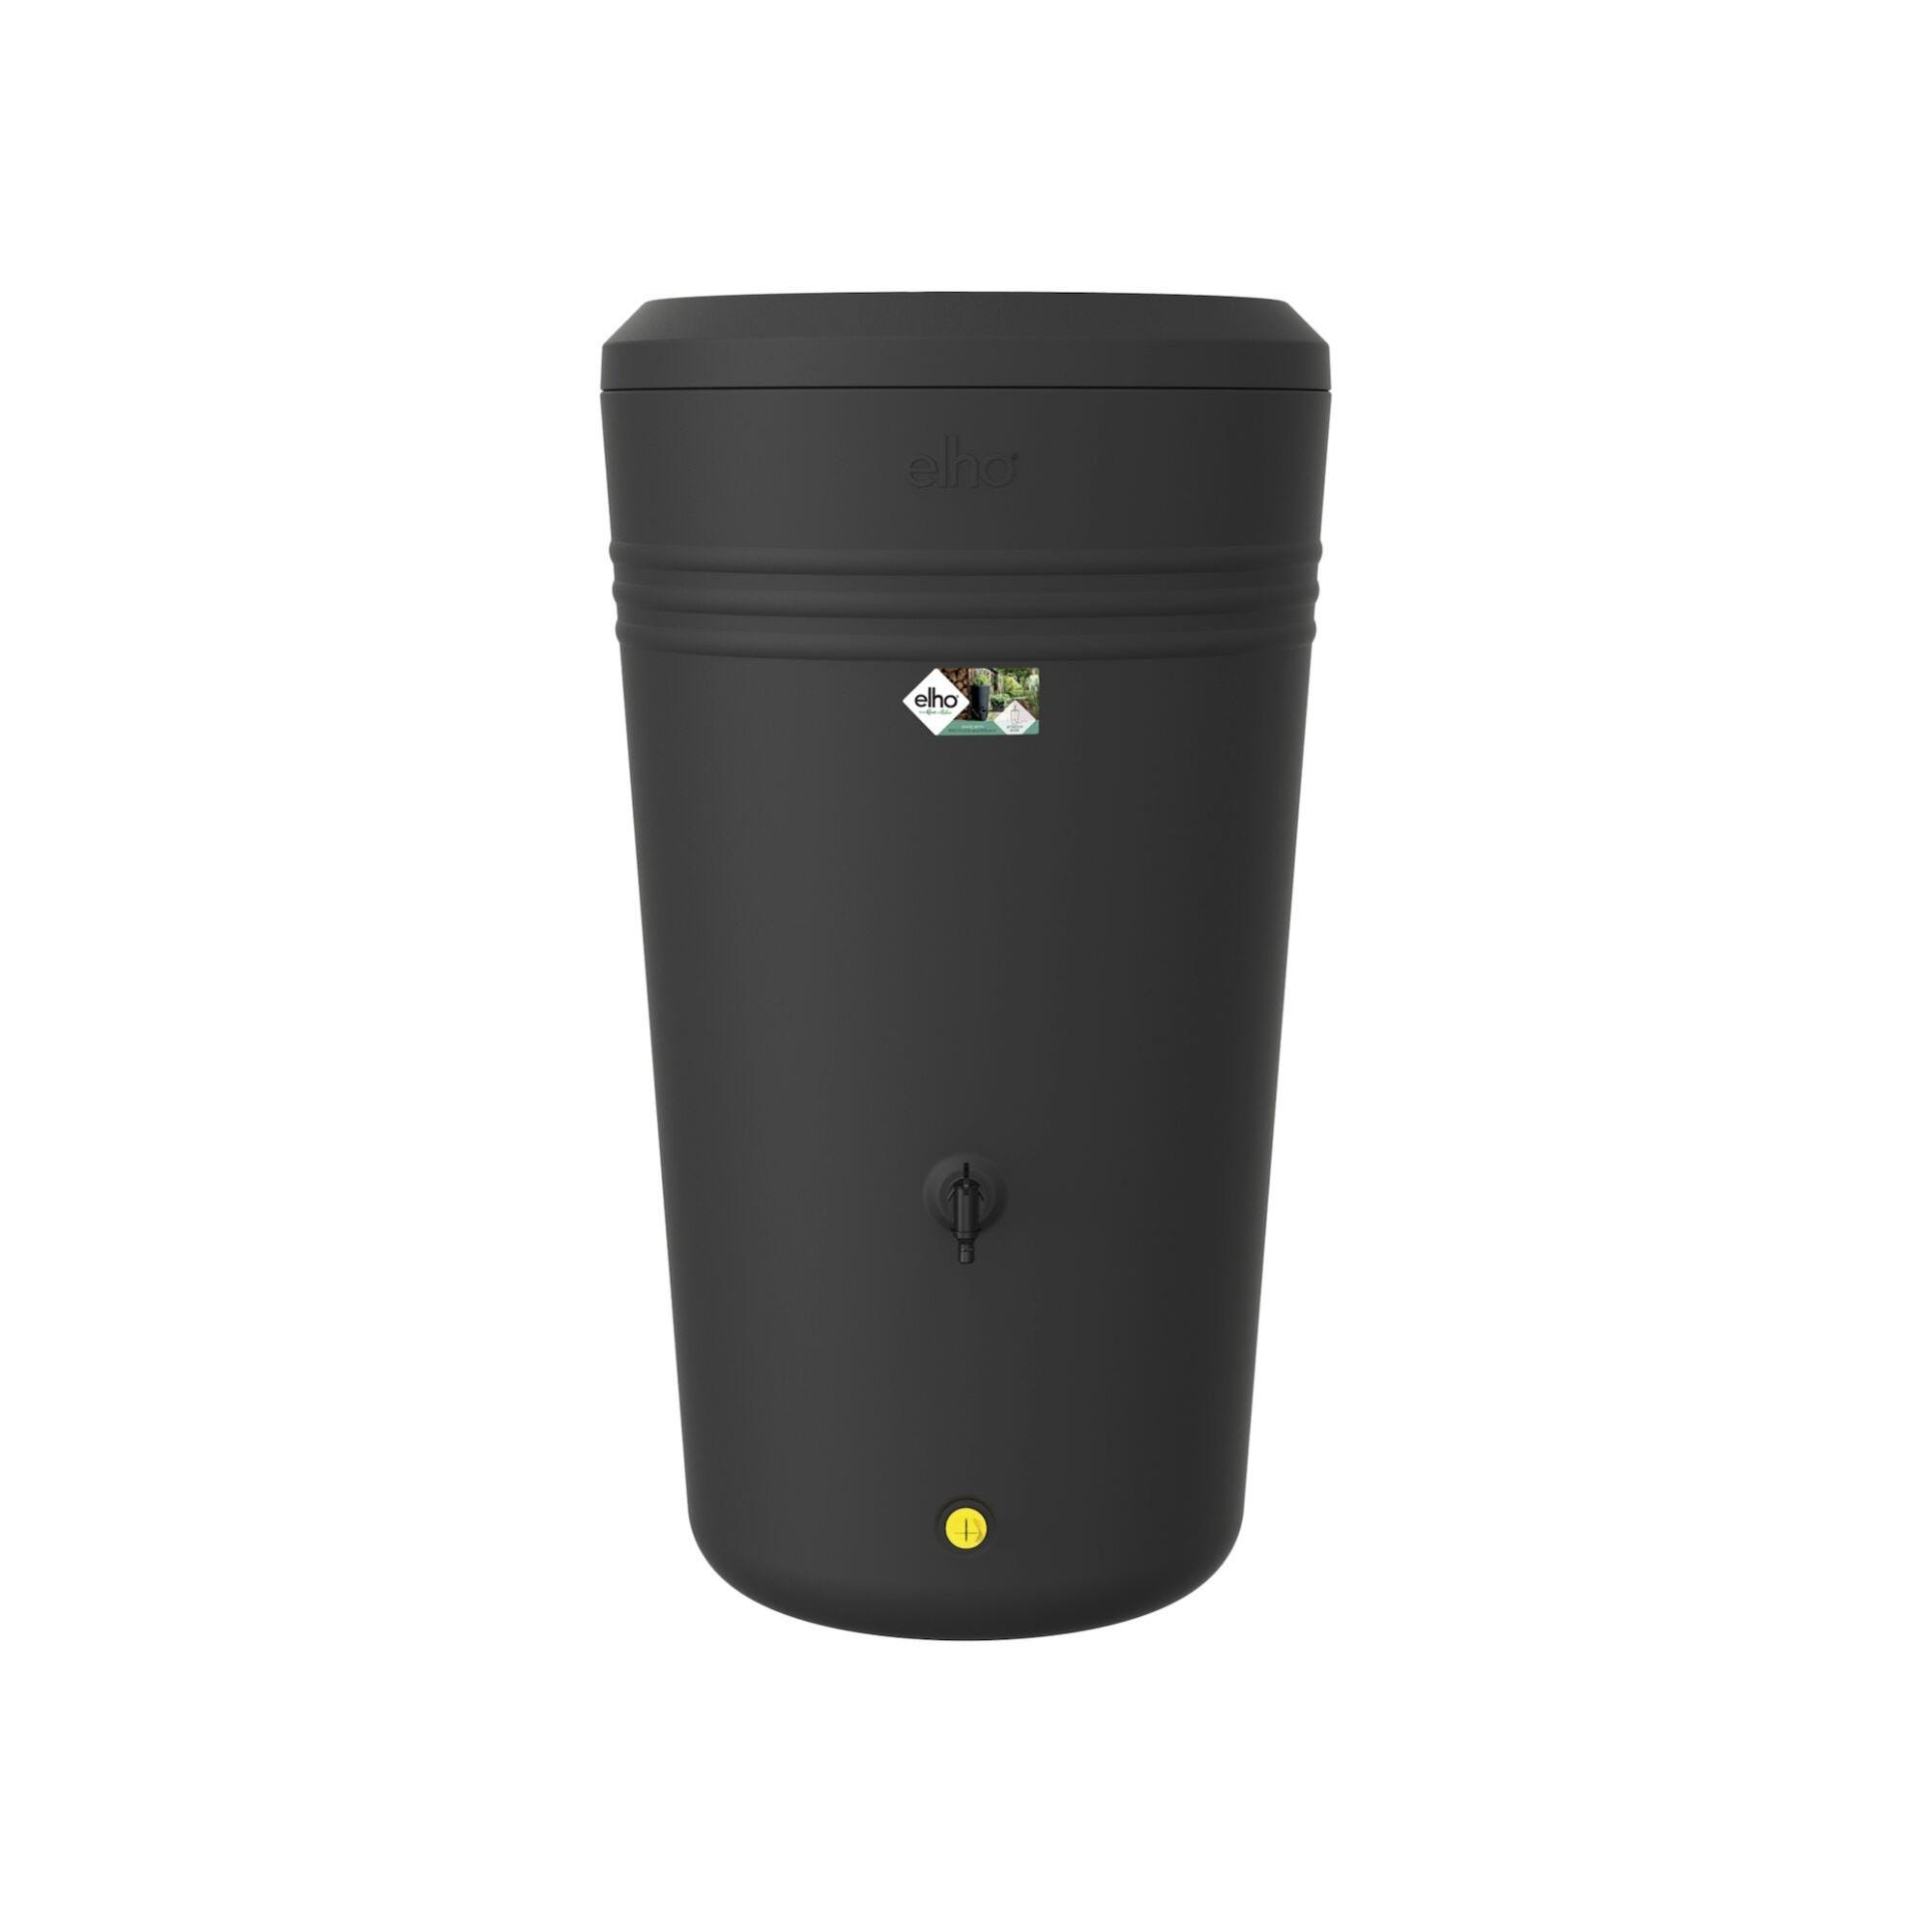 Le récupérateur d'eau de pluie TecTake (200 L) est en promotion sur cette  boutique de renom - NeozOne